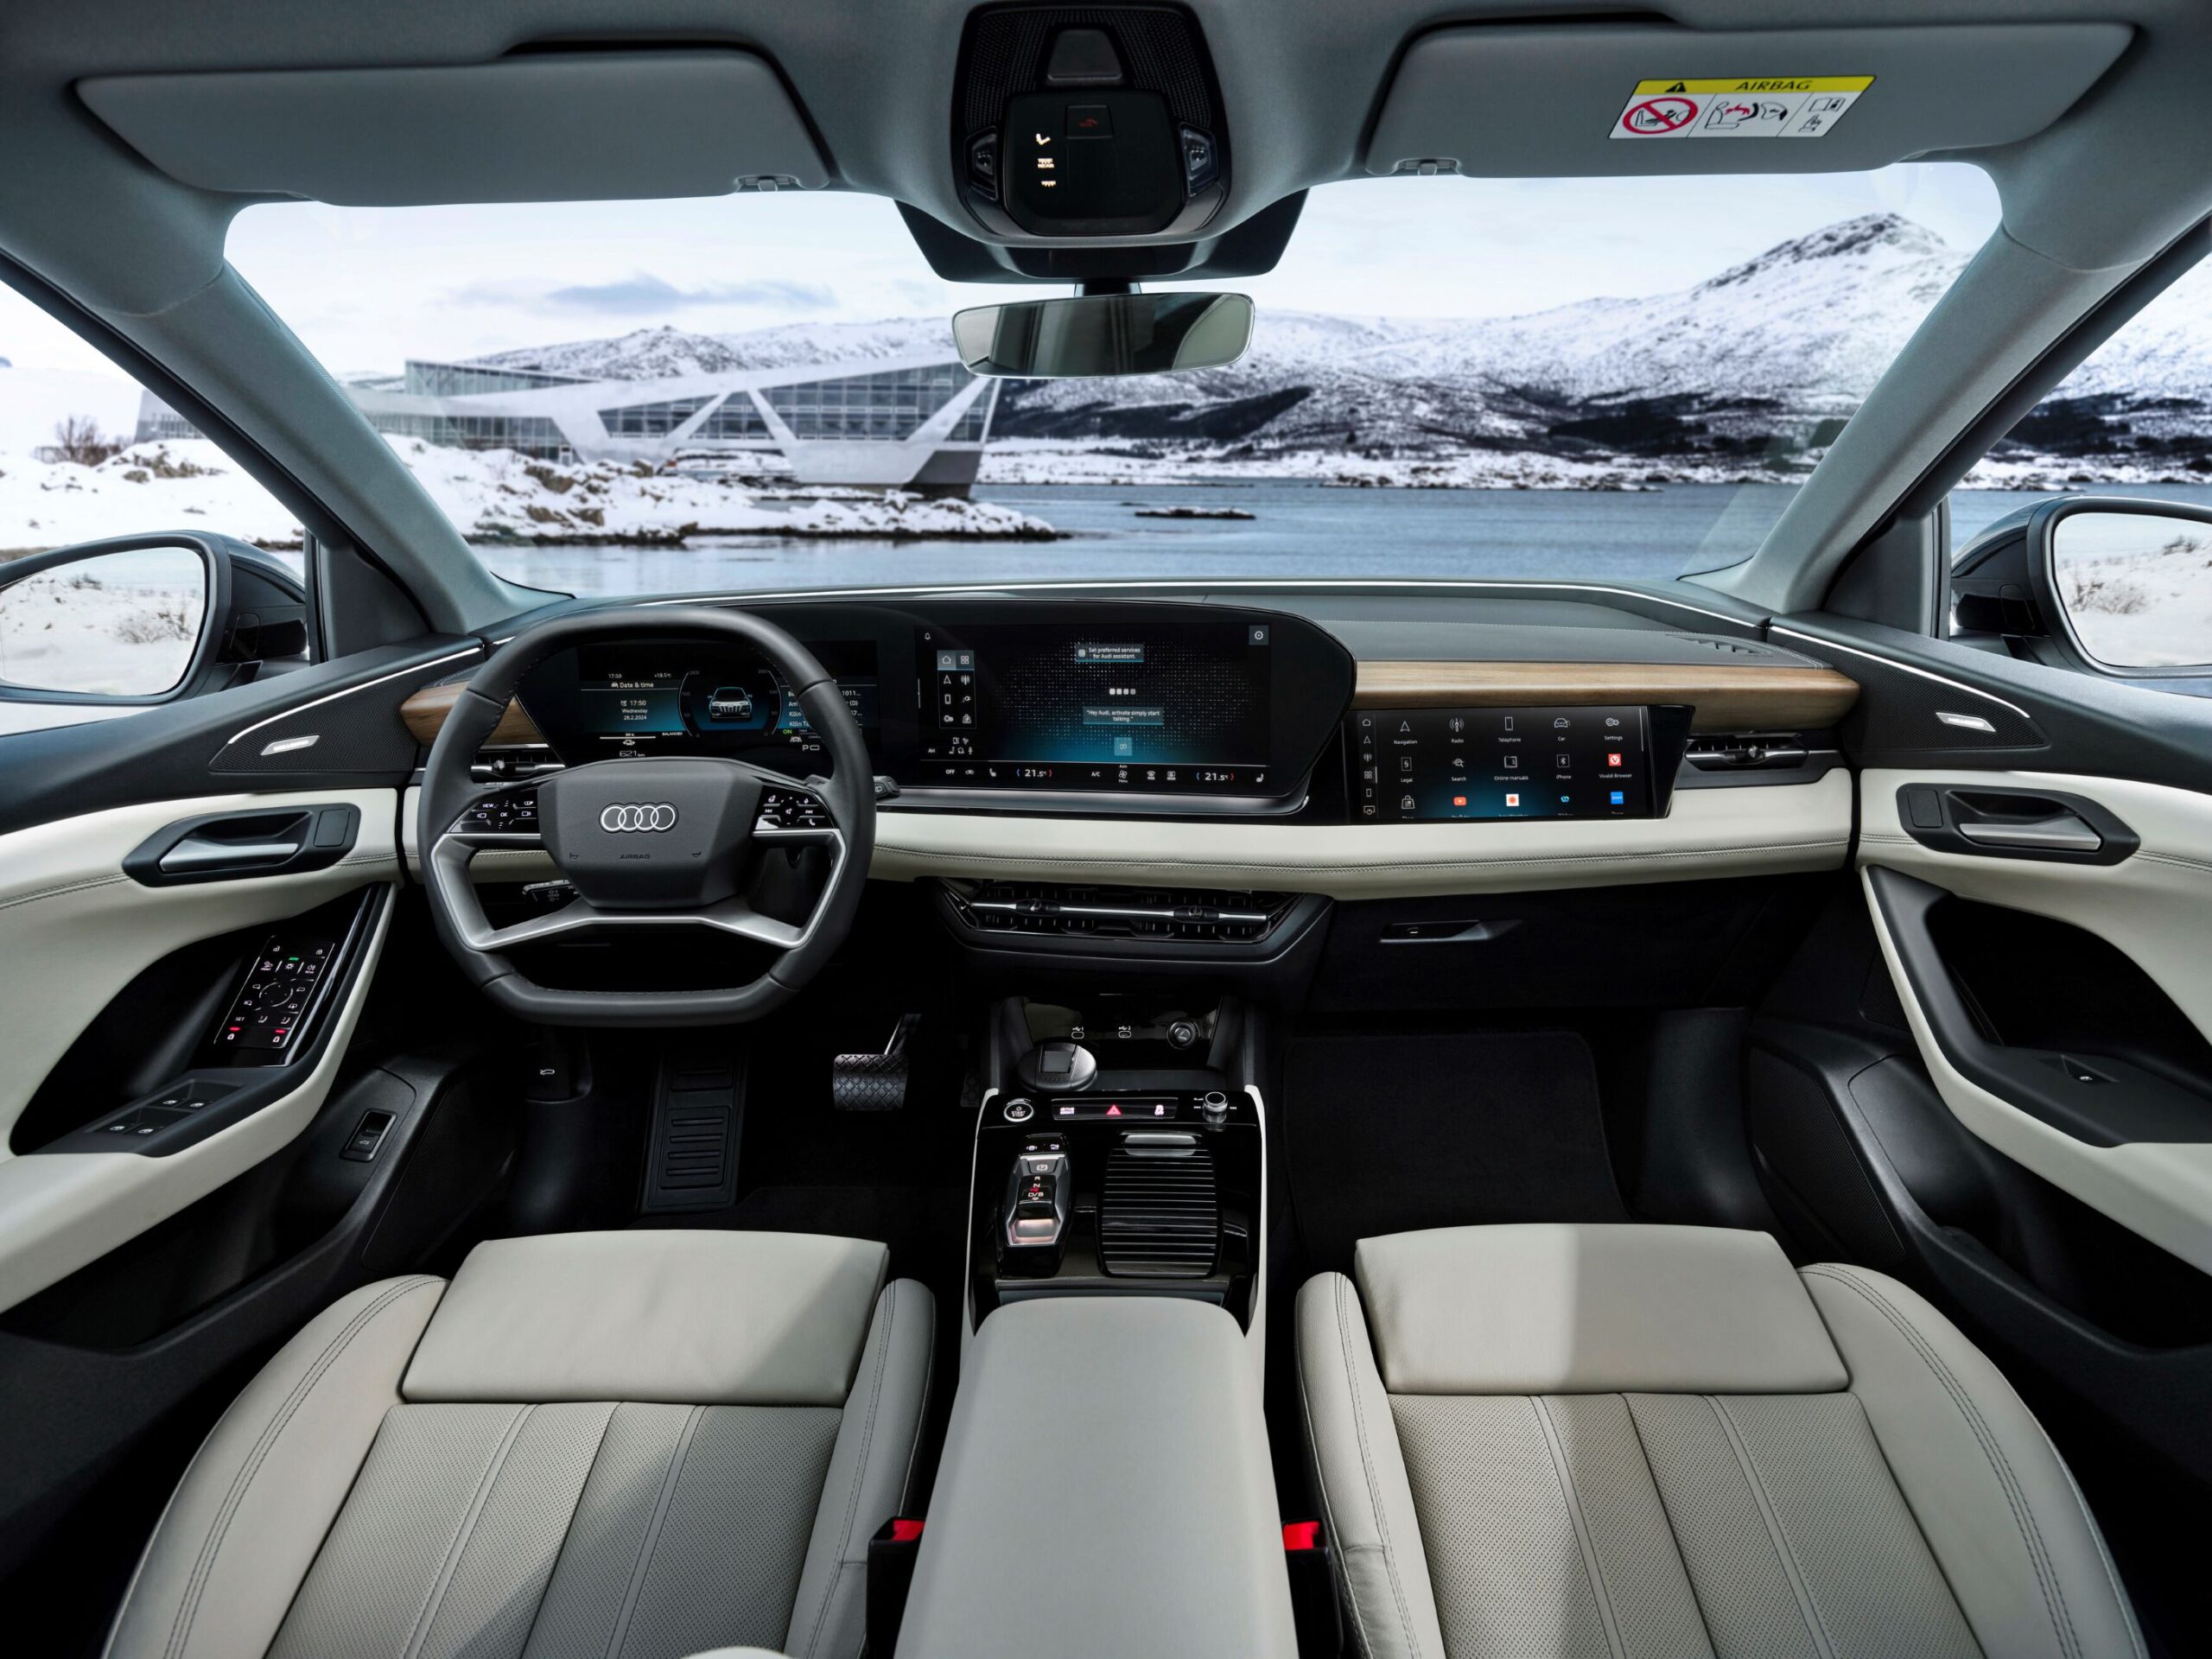 Audi melhora o controlo por voz nos modelos atuais e futuros com o ChatGPT